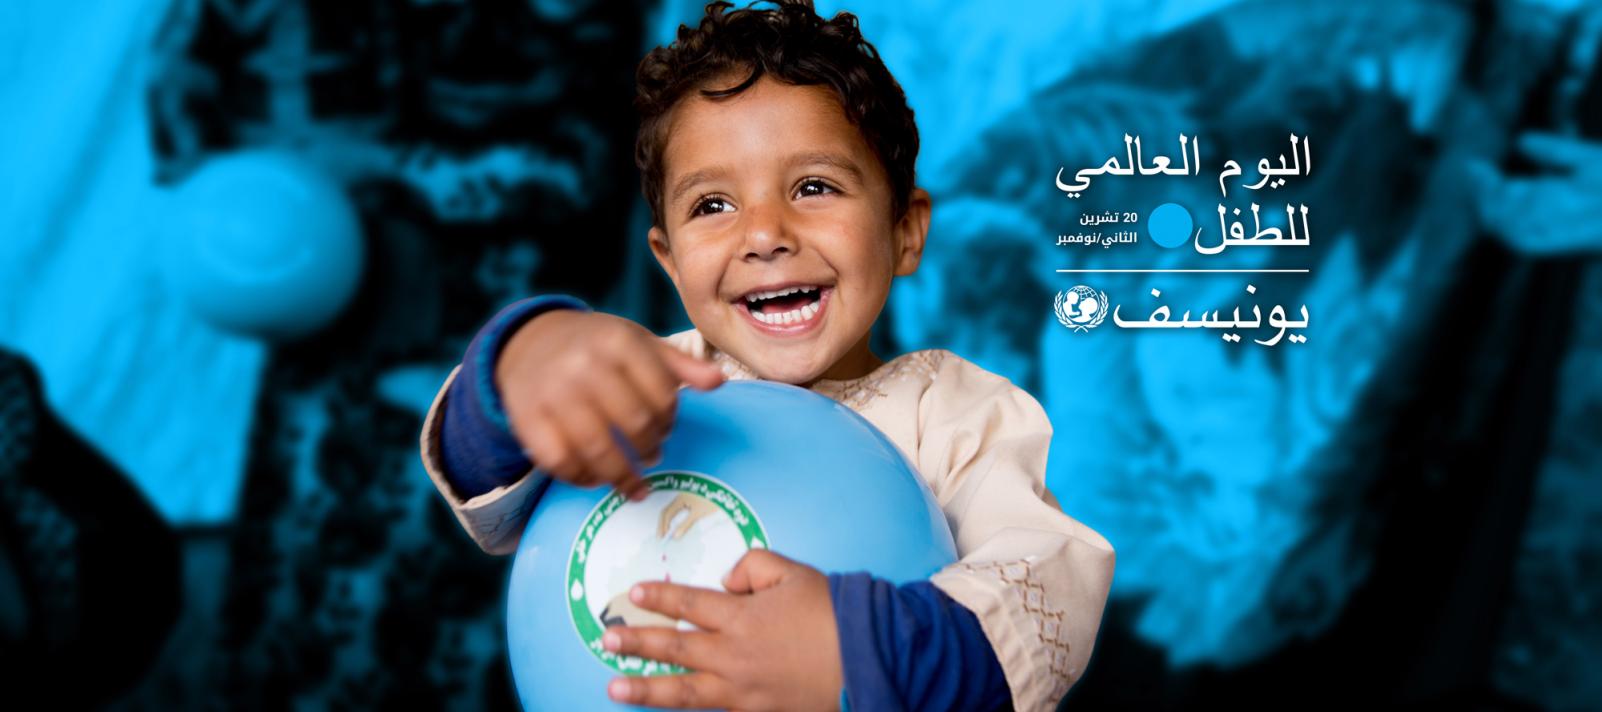 اليوم العالمي للطفل دعوة من اليونيسيف للالتزام بحقوقهم العربية Rci